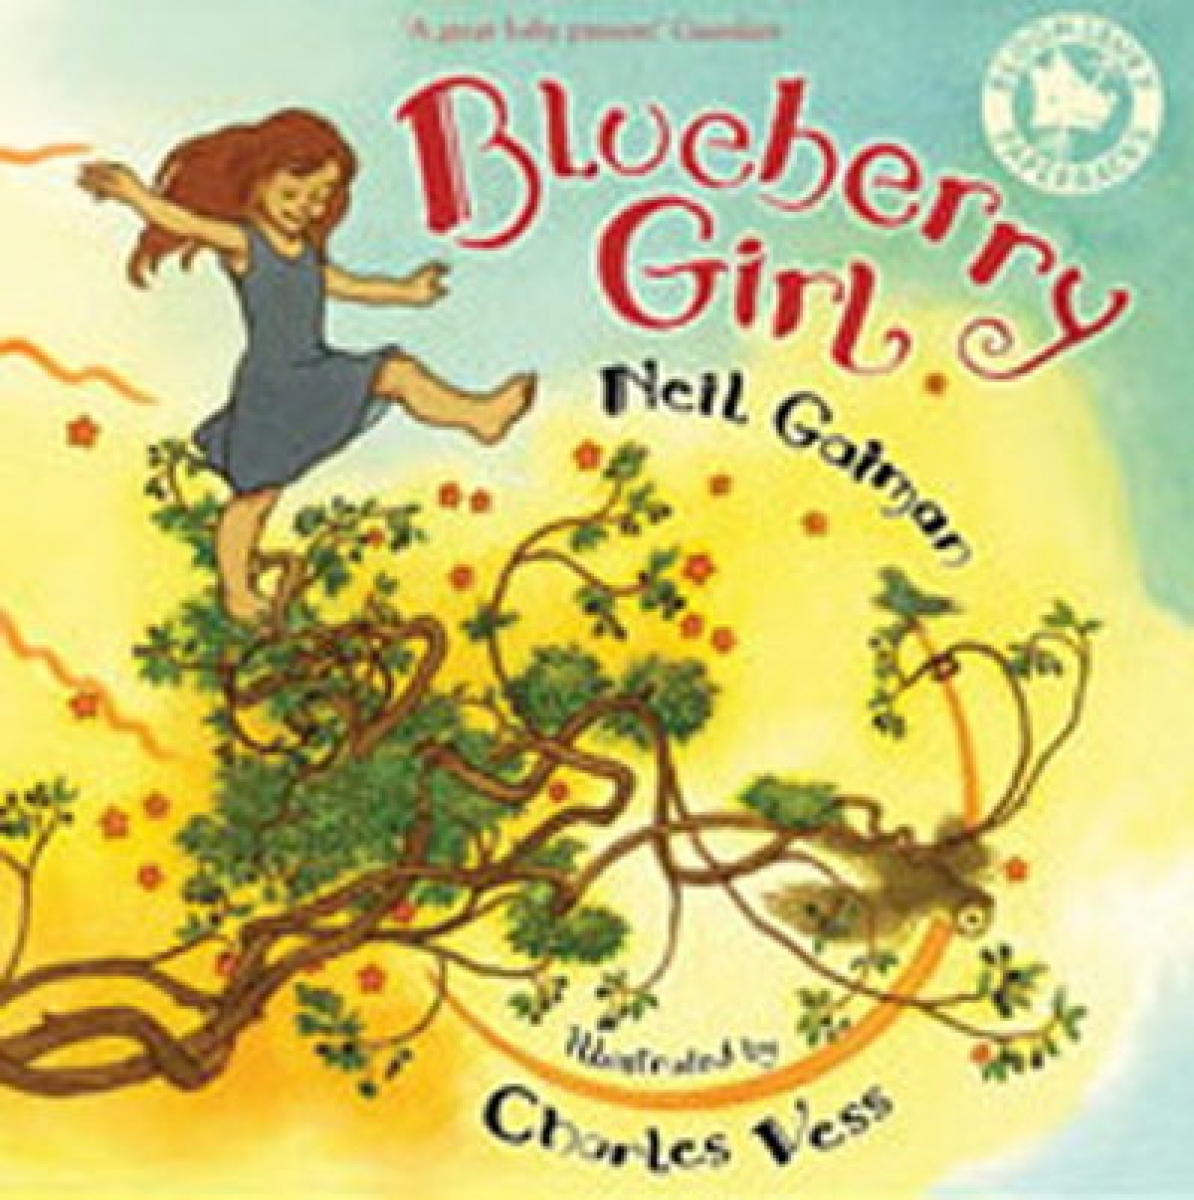 Neil G. Blueberry Girl (illustrated) 